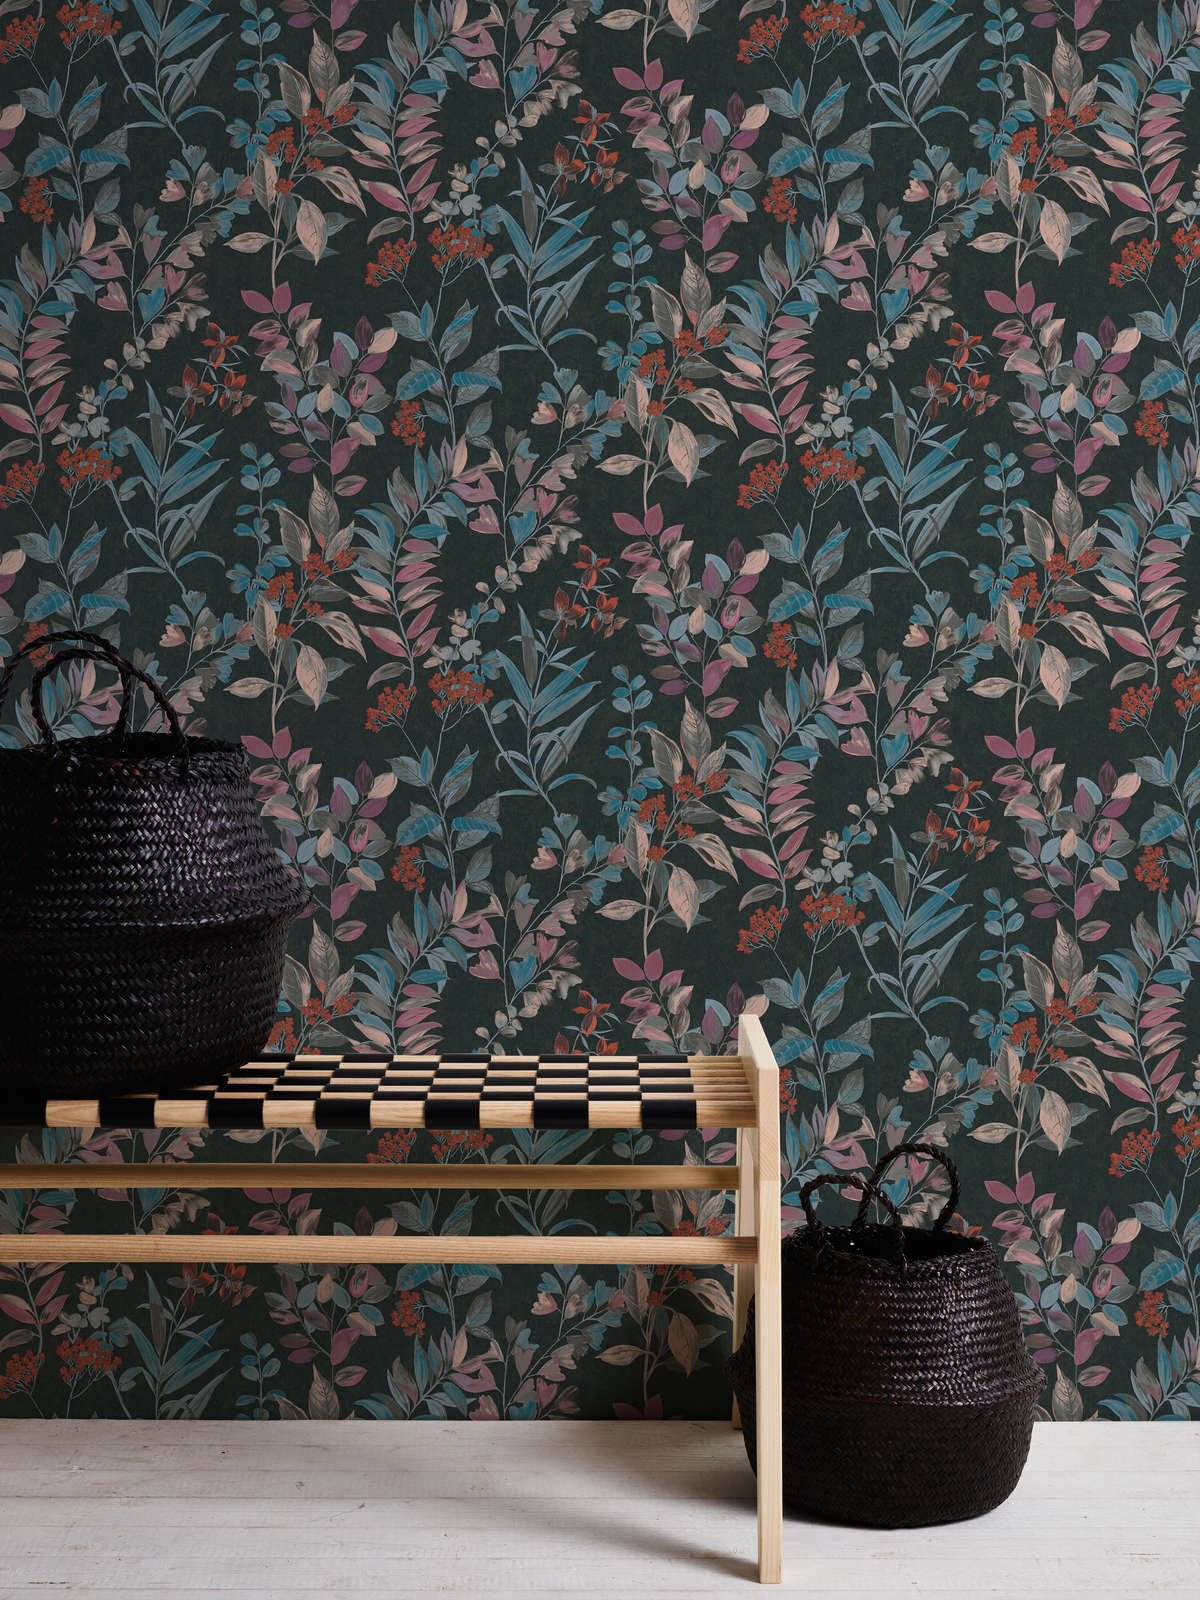             Papel pintado tejido-no tejido con motivos florales - multicolor, negro, azul
        